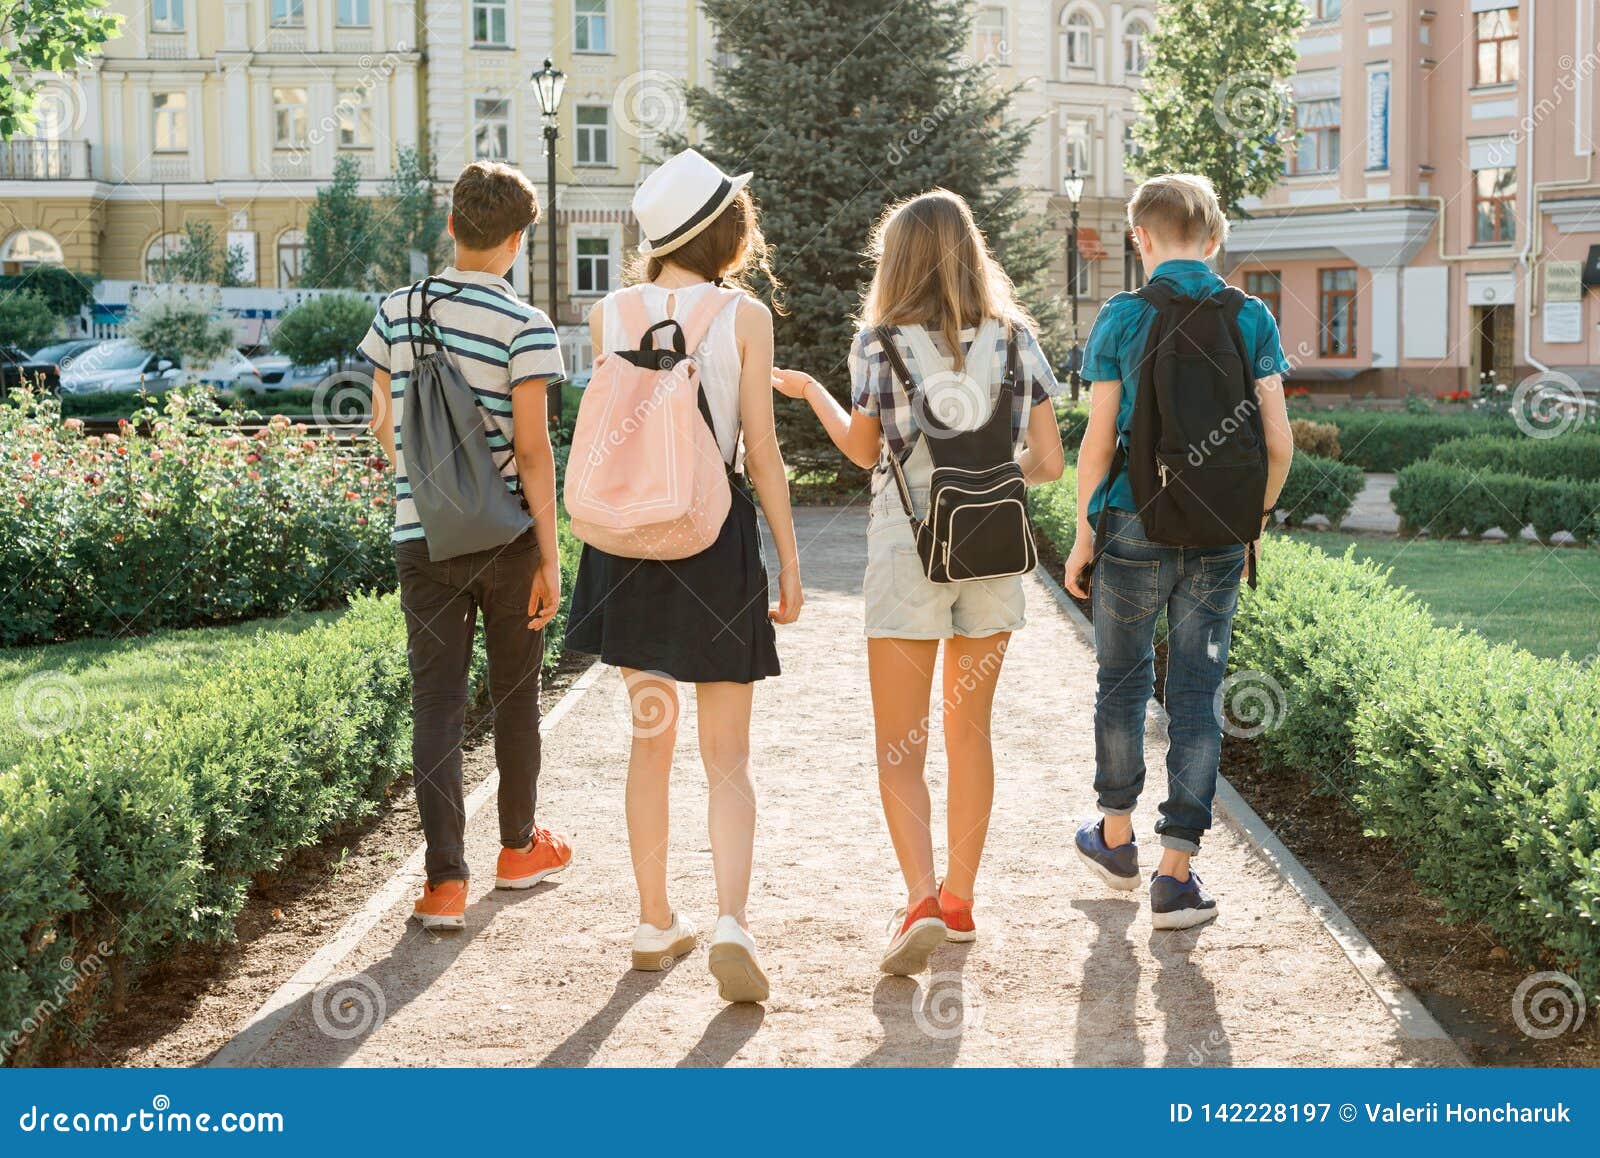 Подростки лето в москве. Подростки летом в городе. Друзья на прогулке. Прогулка подростков. Подросток идет по улице.